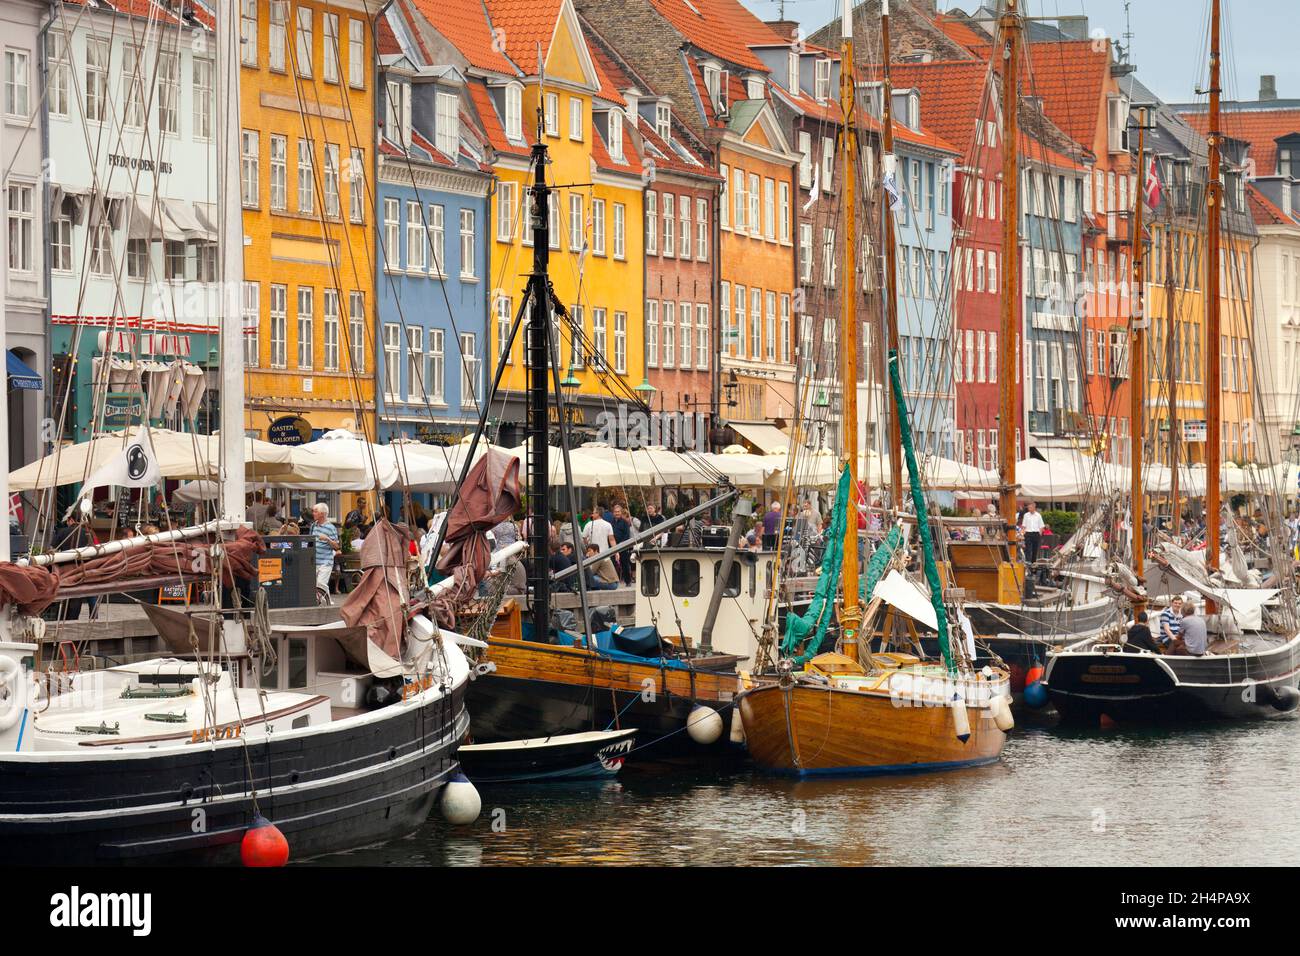 Nyhavn est un front de mer, canal et quartier de divertissement du siècle du Sud à Copenhague, au Danemark. Bordé de couleurs vives du 17ème et du début du 18ème siècle Banque D'Images